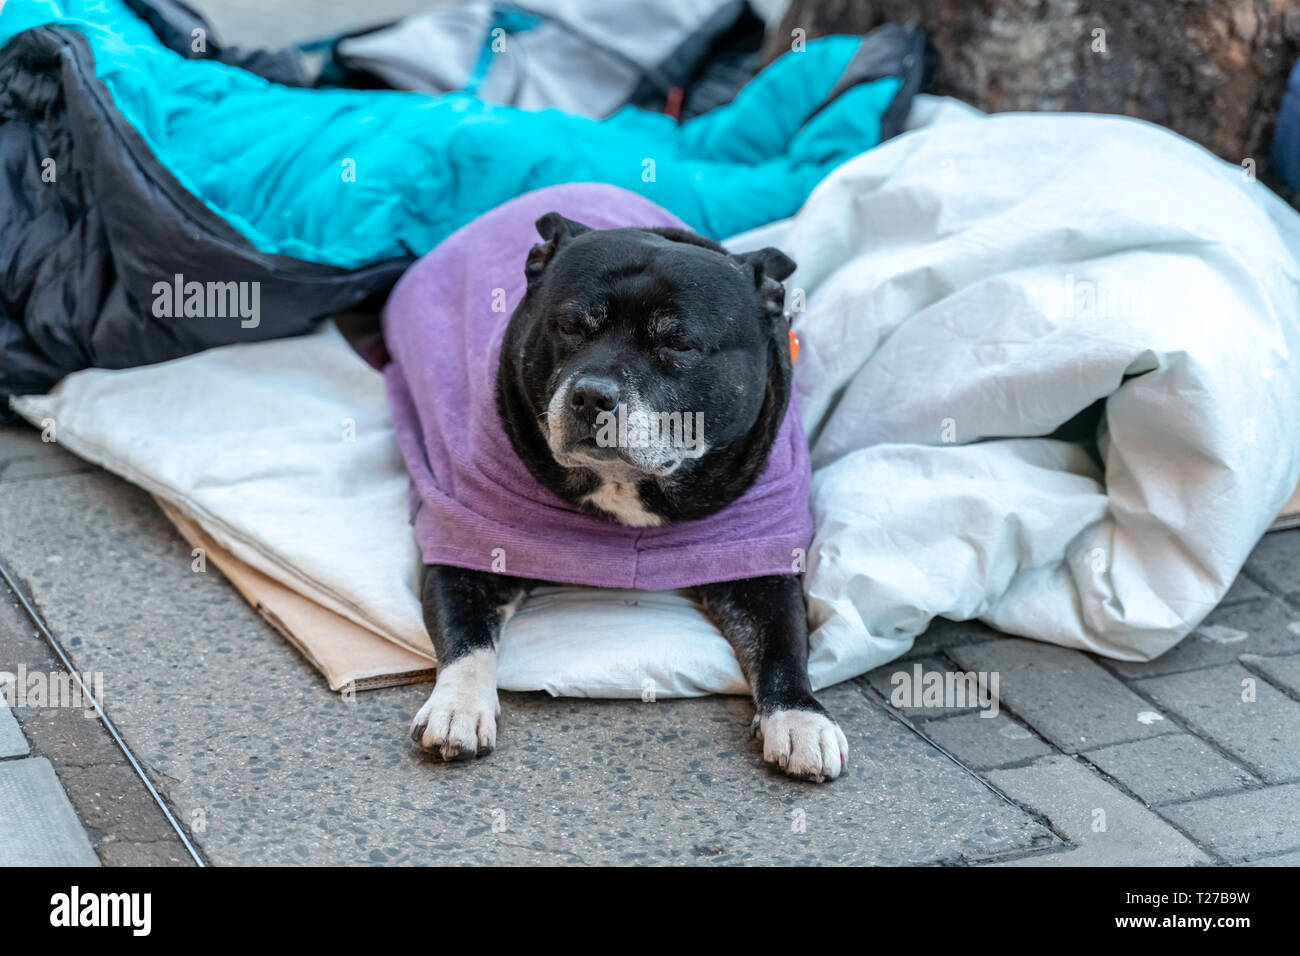 Un chien couché seul sans espoir et appuyée sur la rue sent anxieux et solitaire dans un sac de couchage et d'attente pour l'alimentation. La notion de sans-abri, u Banque D'Images